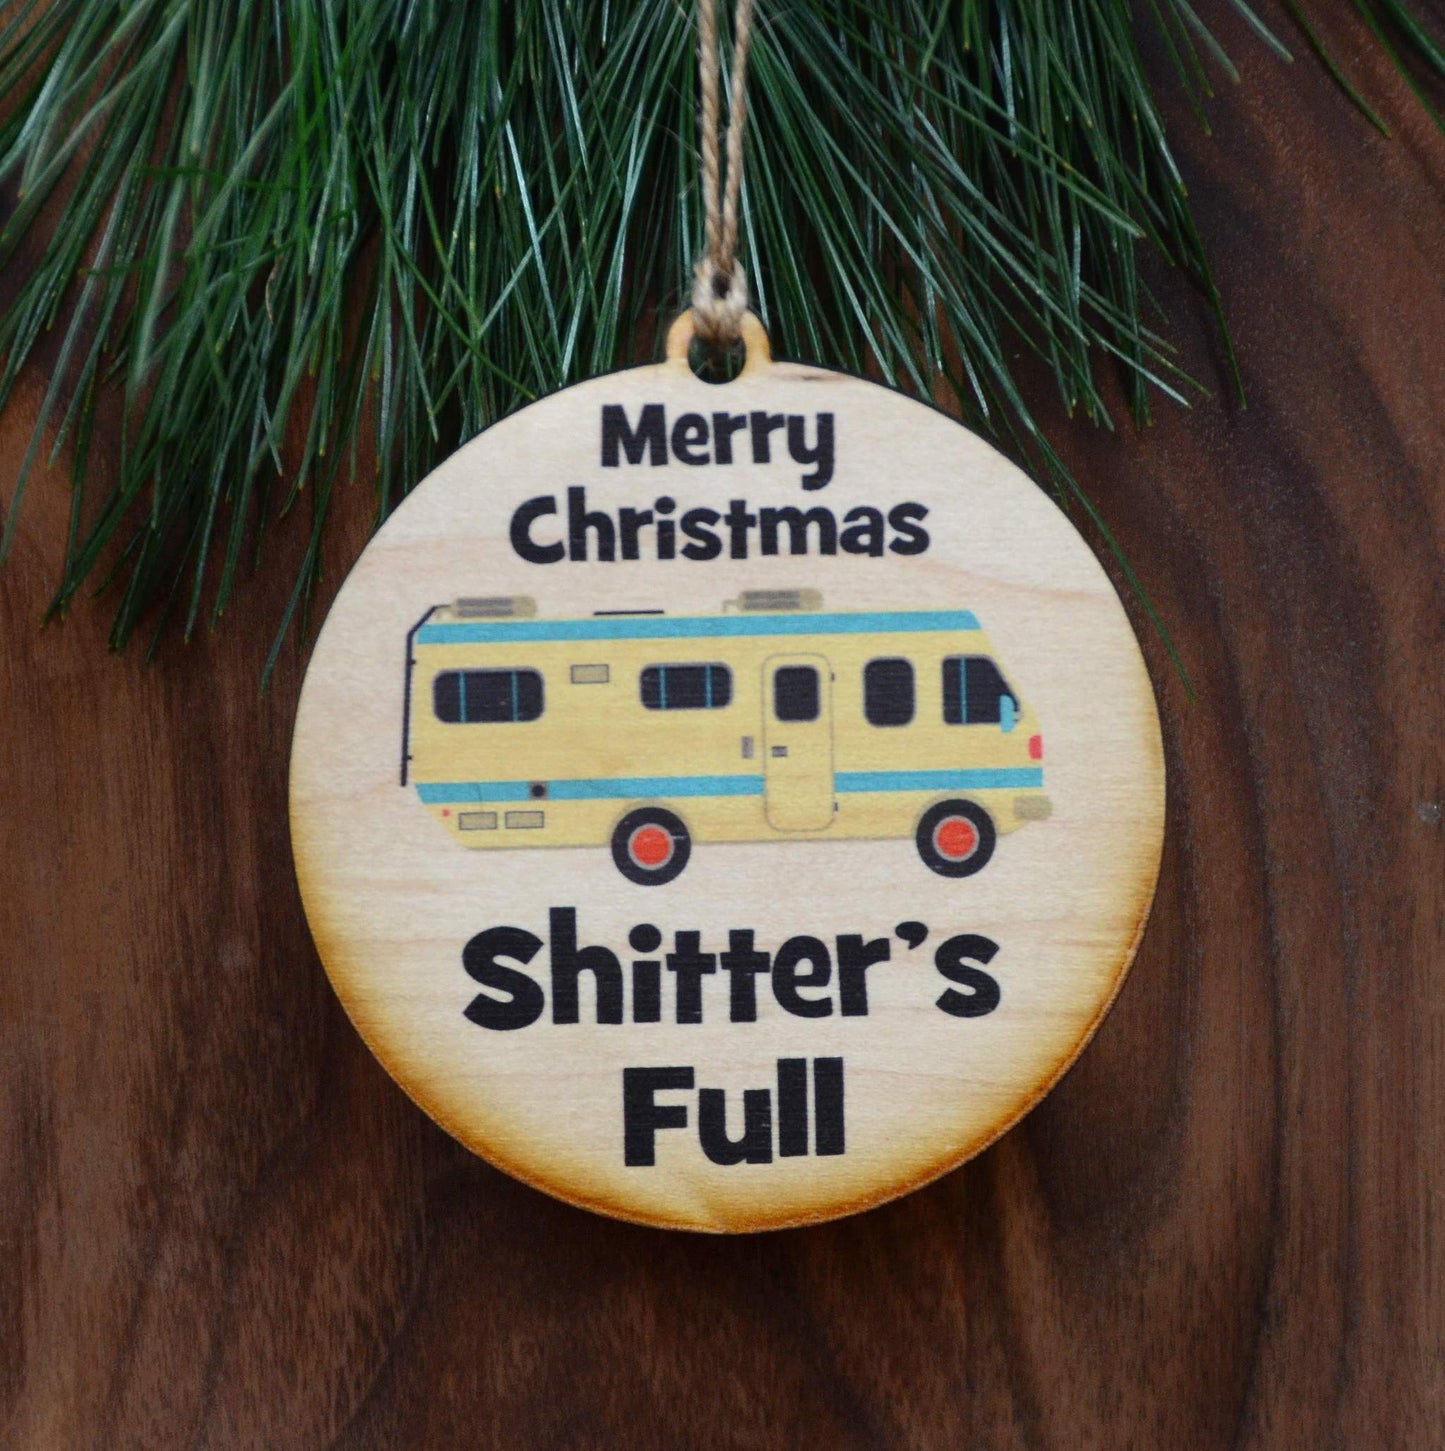 Ornament - Shitter's Full